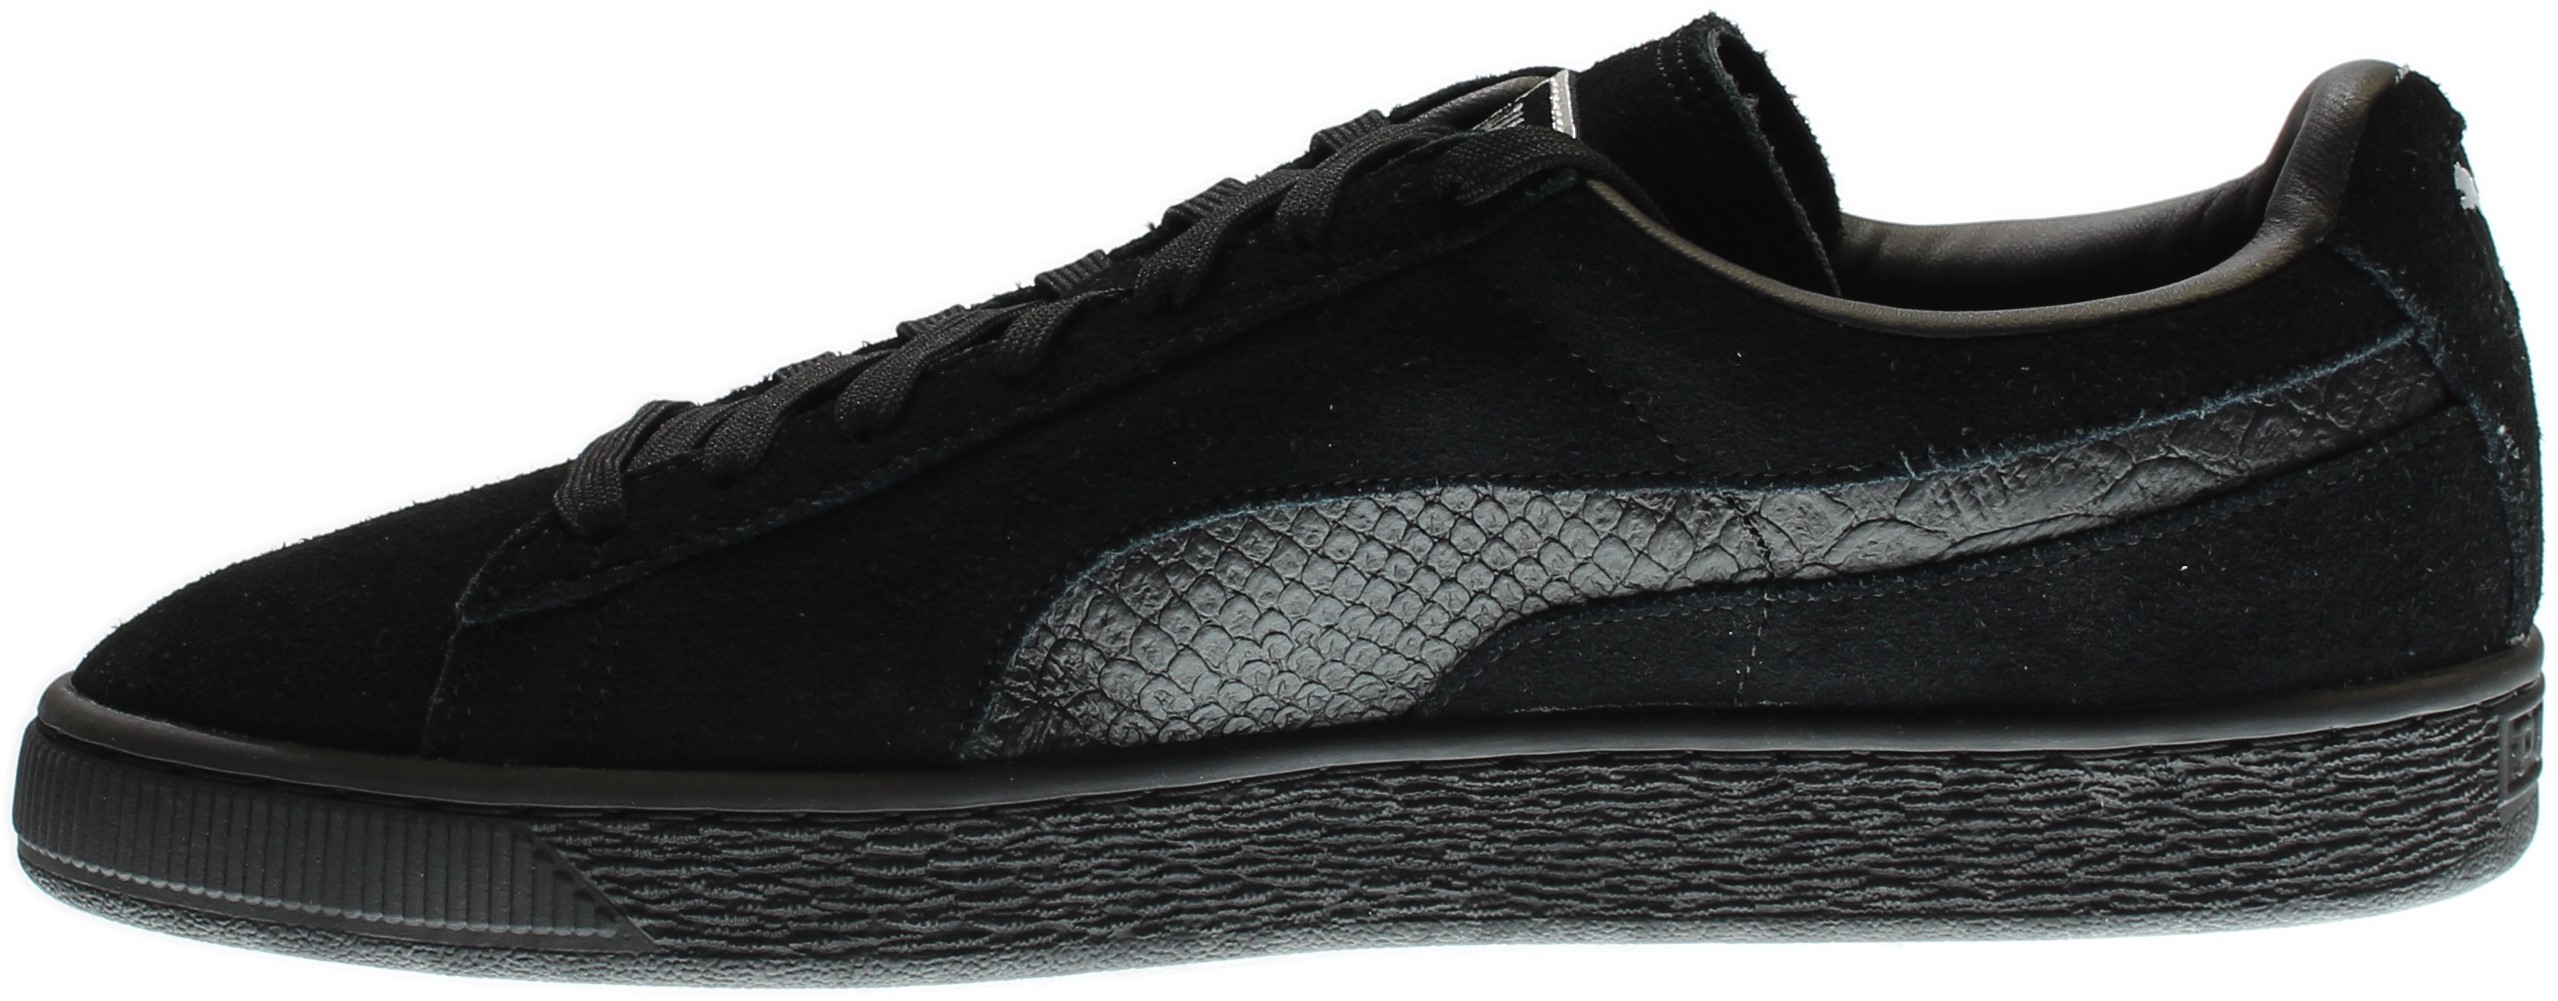 PUMA 363164-06 : Men's Suede Classic Mono Reptile Fashion Sneaker, Black (Puma Black-puma Silv, 10.5 D(M) US) - image 4 of 7